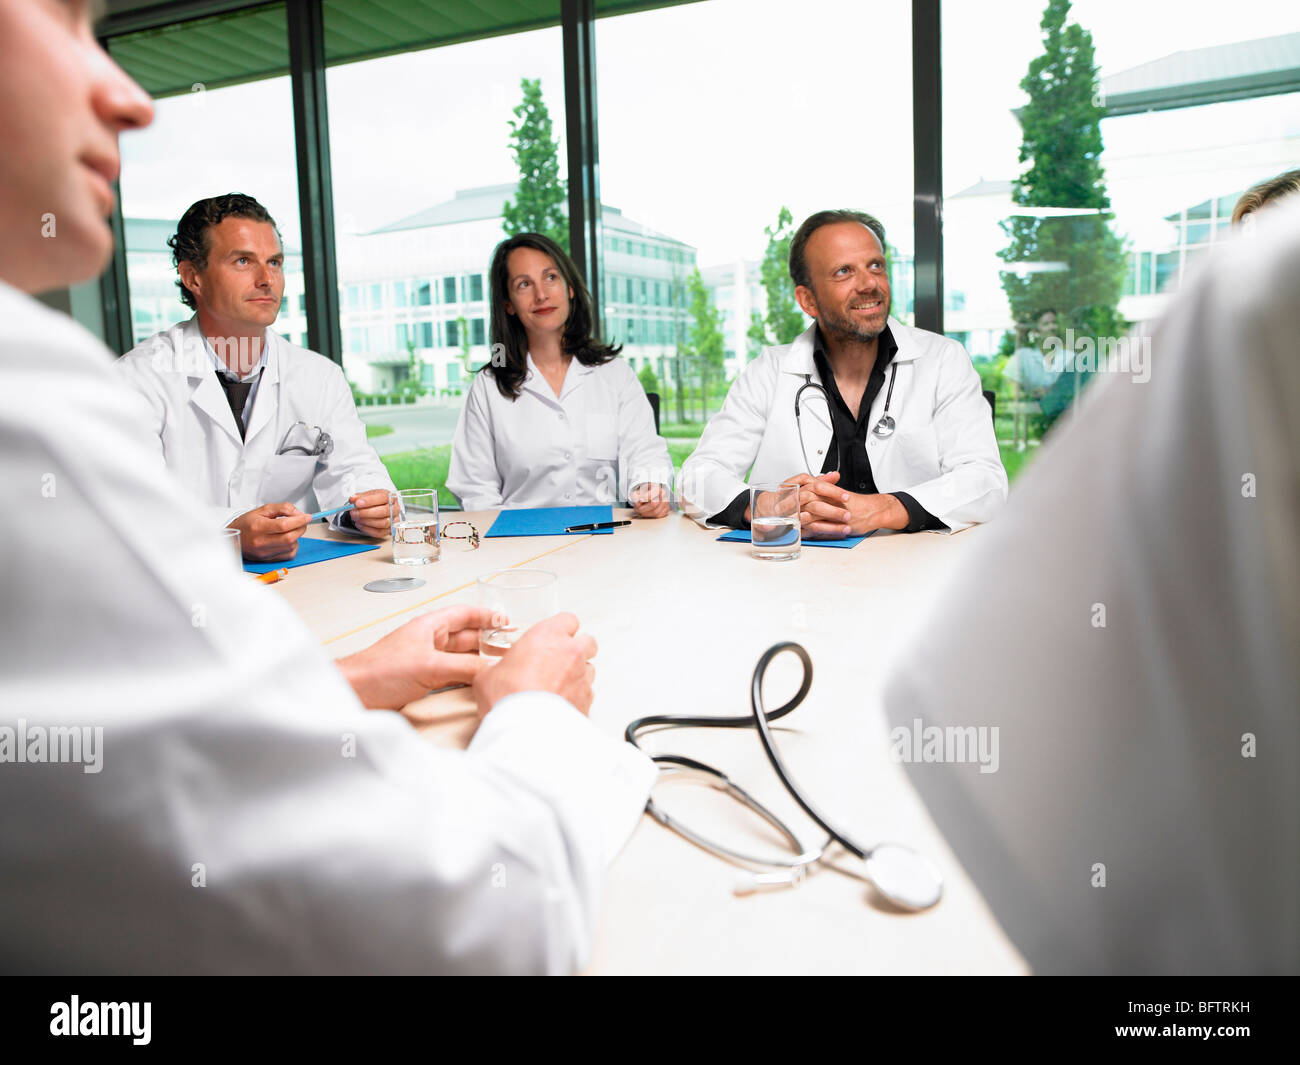 Les médecins autour d'une table Banque D'Images